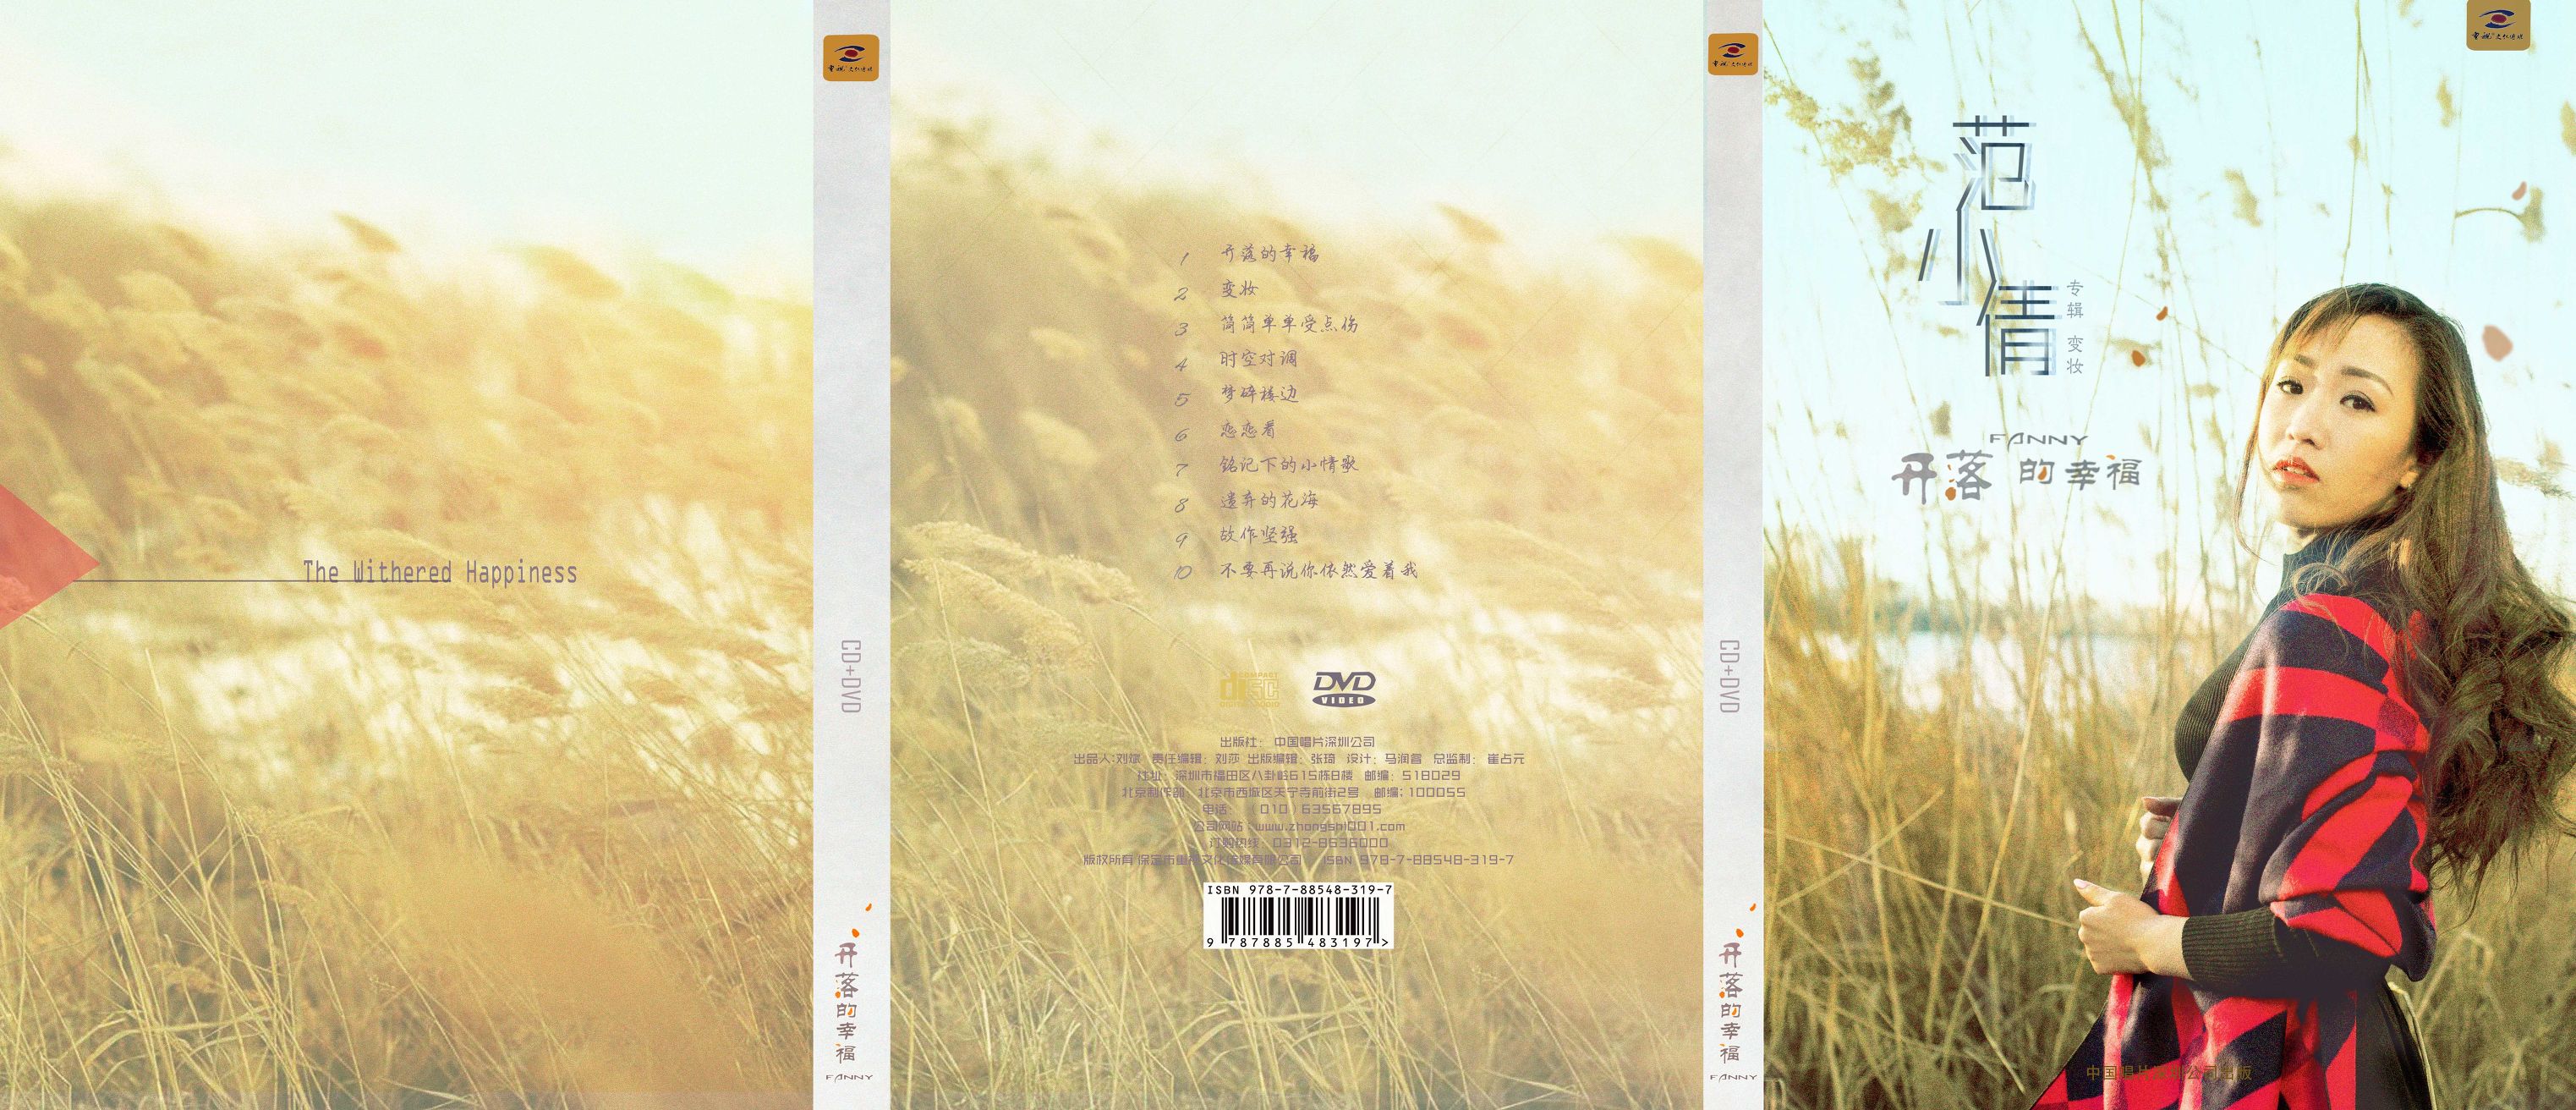 范小倩首张专辑《开落的幸福》温婉忧伤致青春